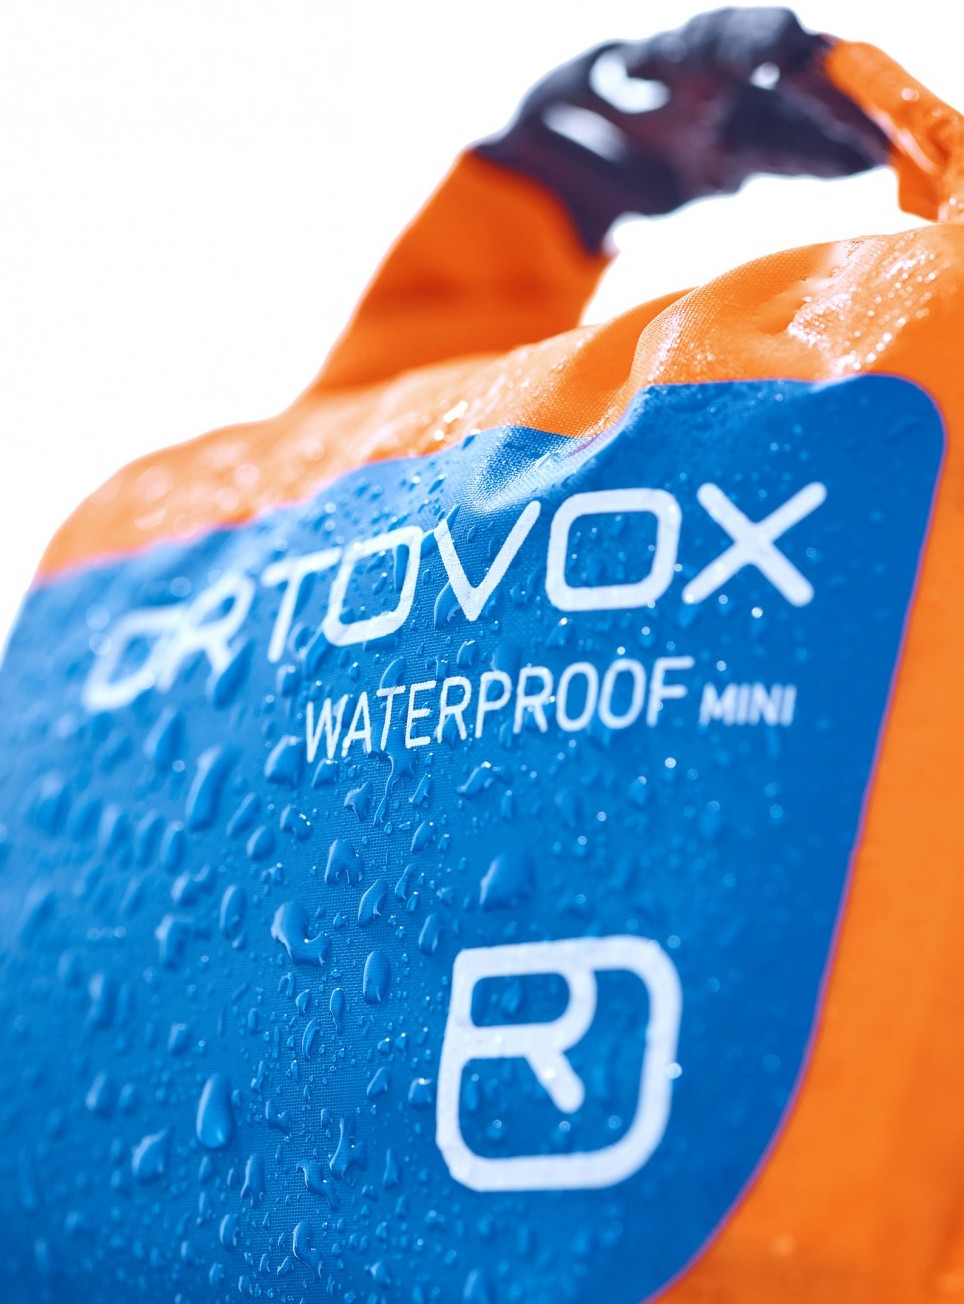 Ortovox First Aid Waterproof Mini First Aid Kit